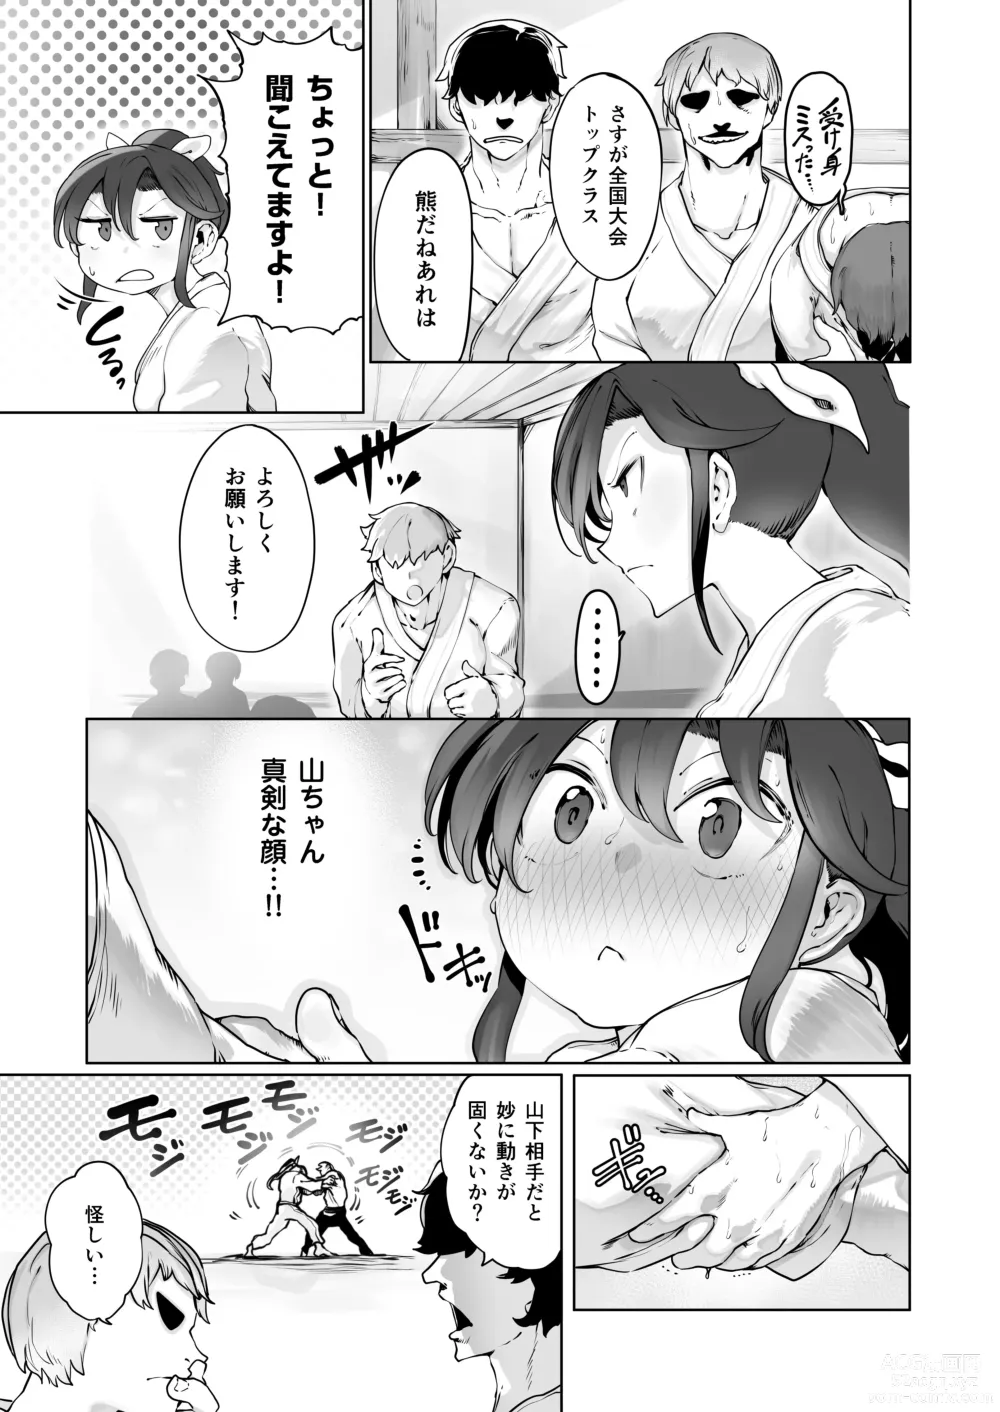 Page 6 of doujinshi Yozora no Tsuki ga Ochiru made